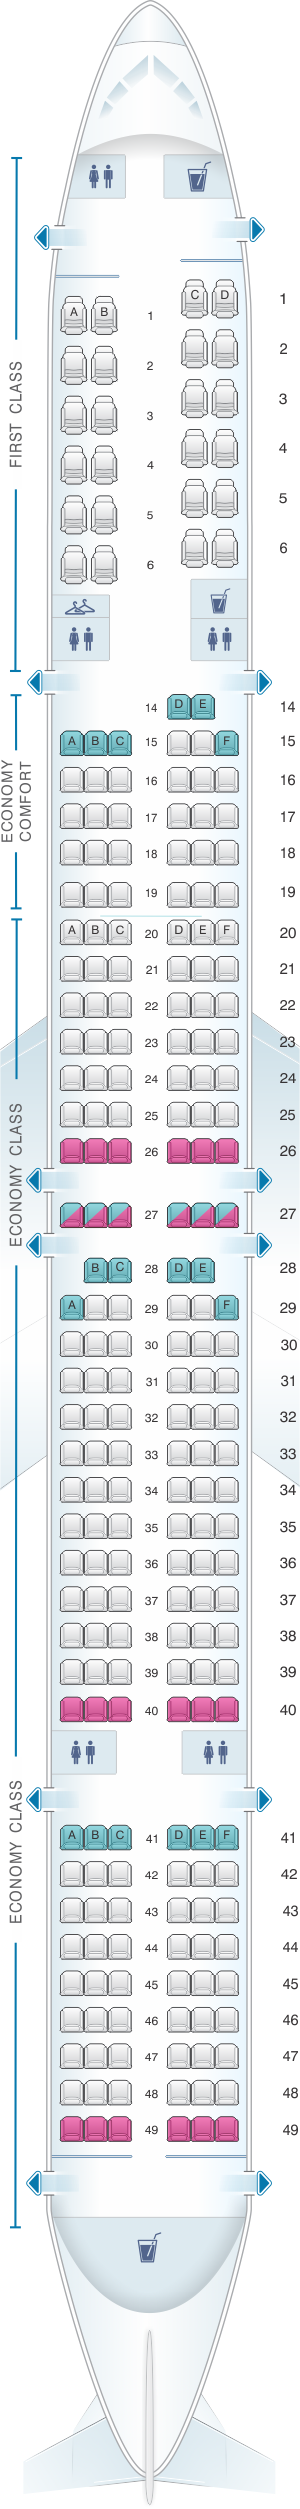 boeing 757 seating